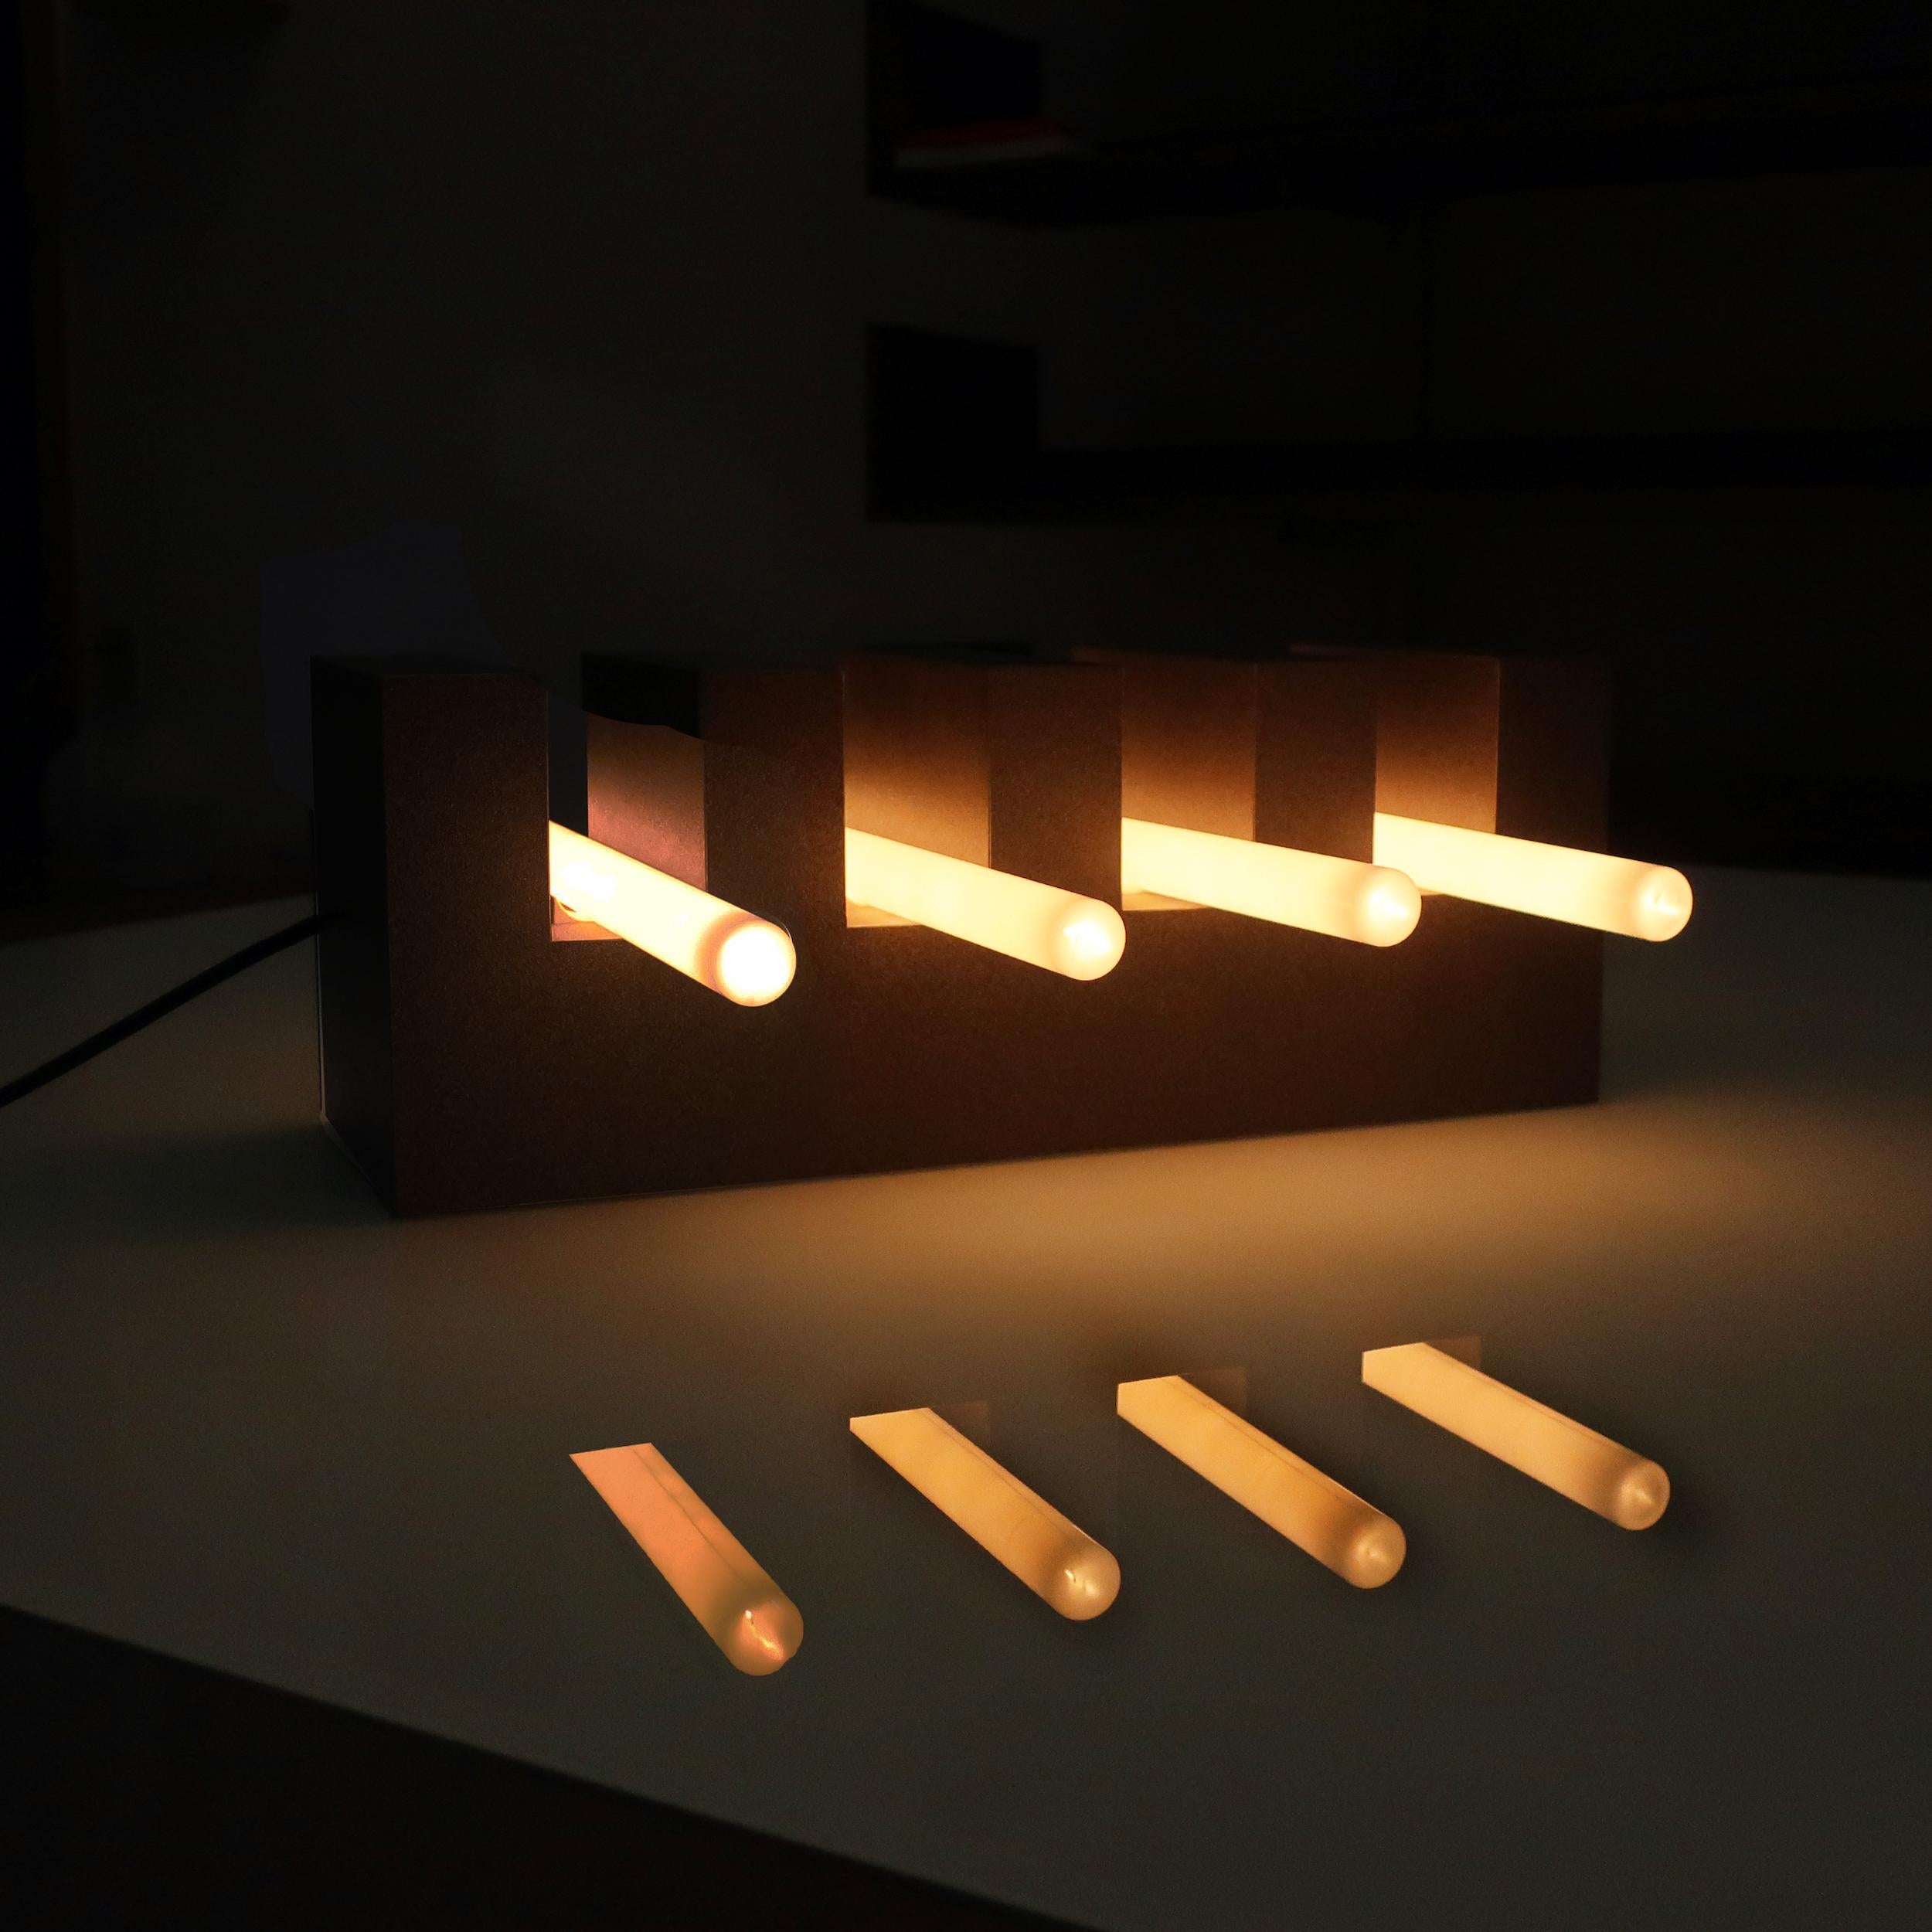 Verre Lampe de la collection Air Conditioning d' Johanna Grawunder pour la Design Gallery Milano  en vente